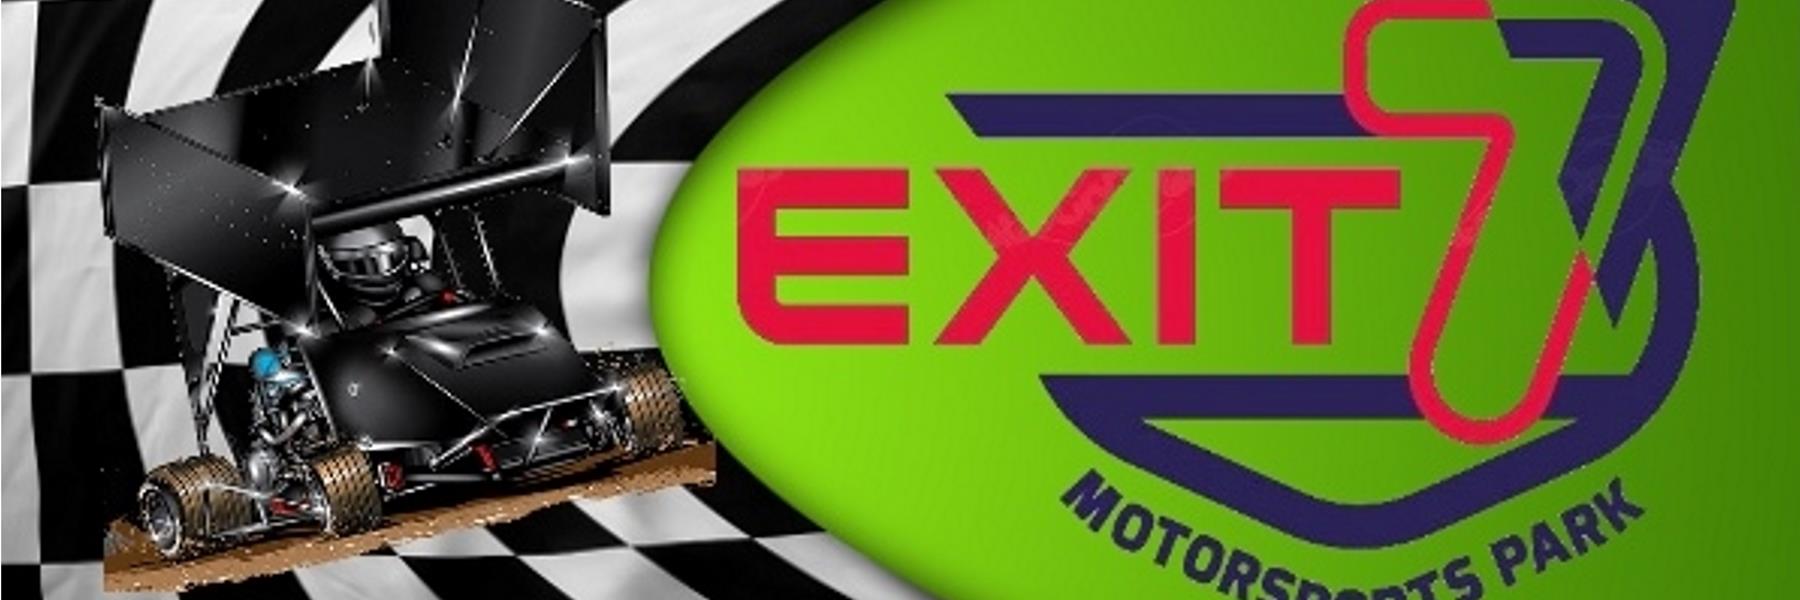 9/10/2022 - Exit 7 Motorsports Park